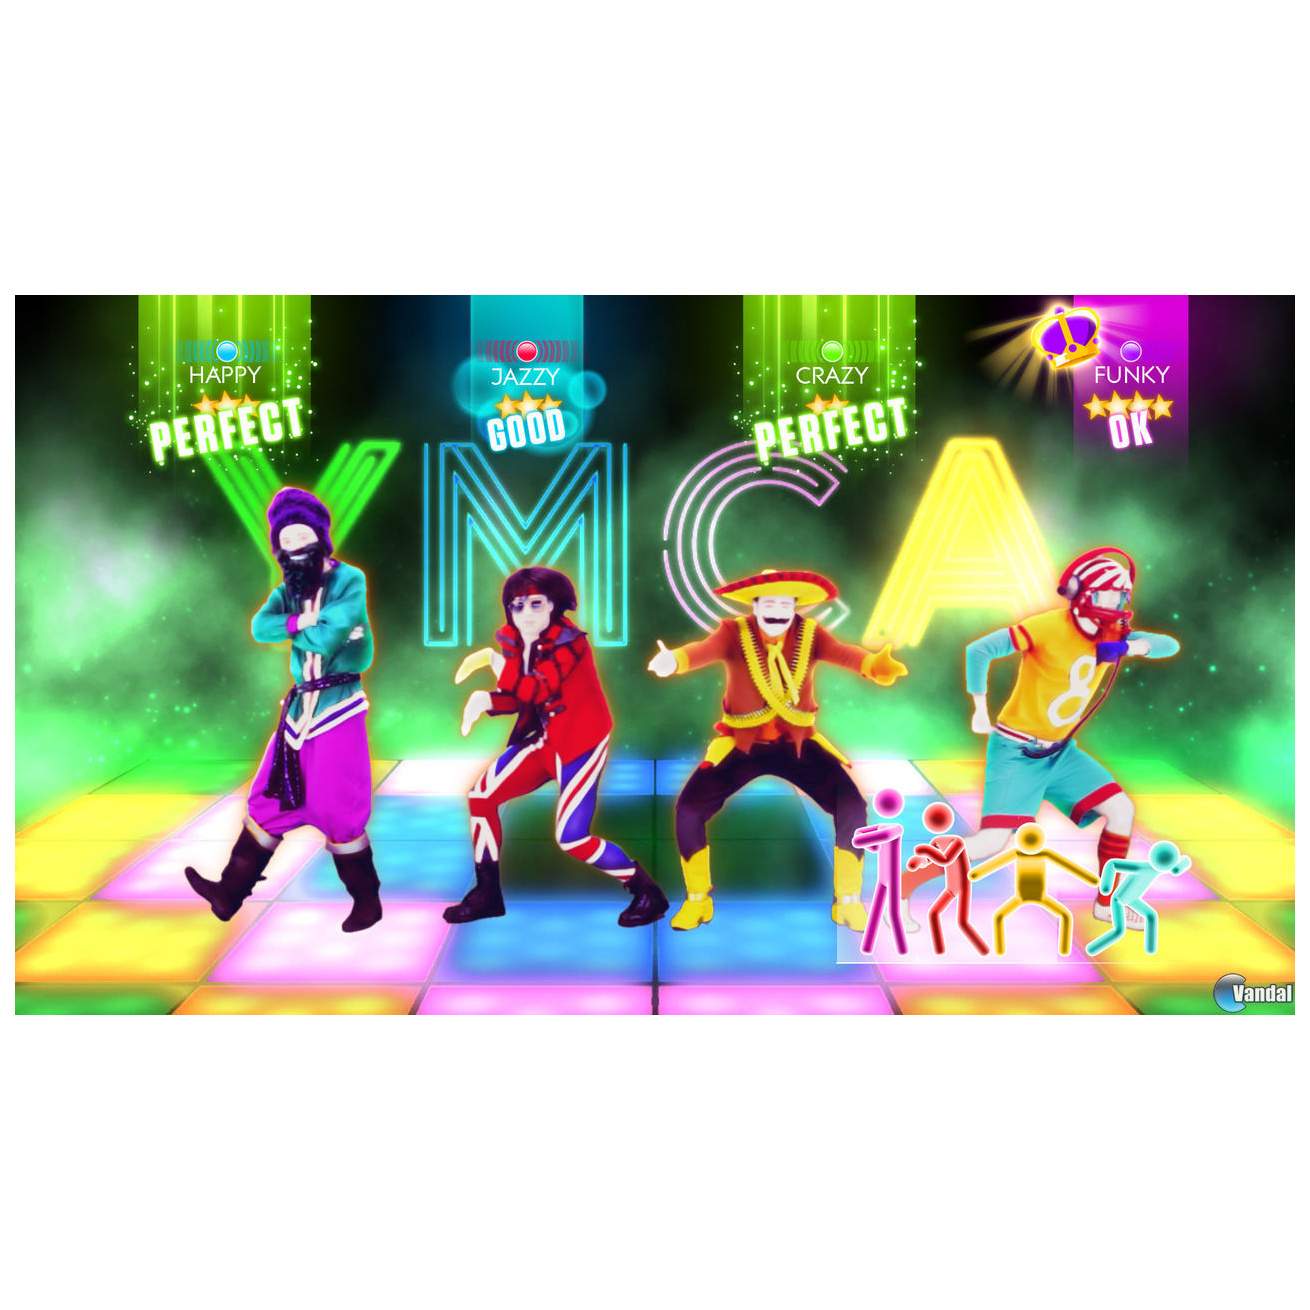 Игра Just Dance 2018 для PlayStation 4